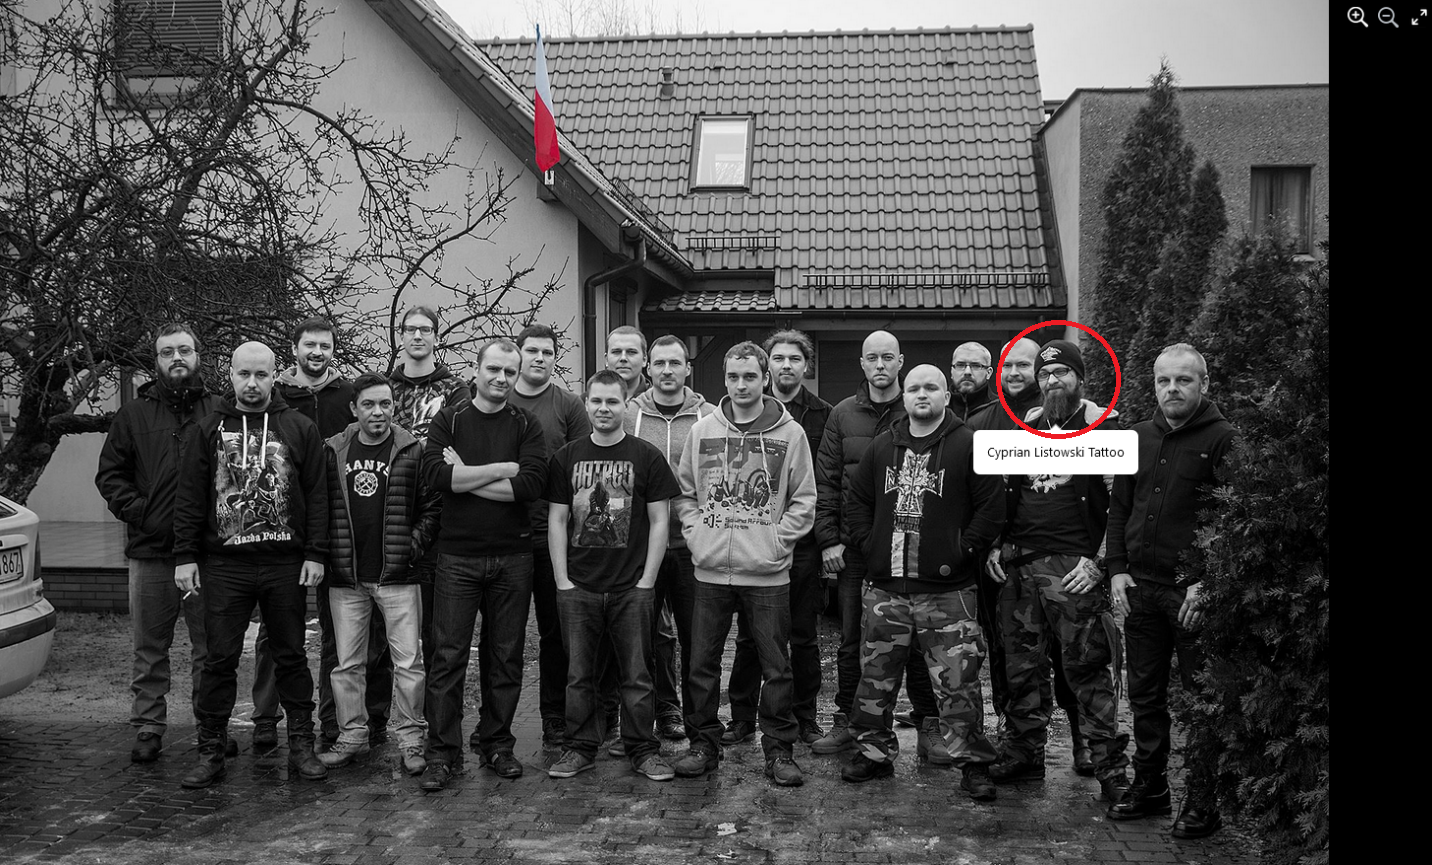 Gruppenfoto des Teams von Destructive Creations in Gliwice vor dem Firmensitz im Jahr 2016. Das Gesicht eines Mannes rechts in der Gruppe (Cyprian Listowski) ist durch einen roten Kreis markiert.